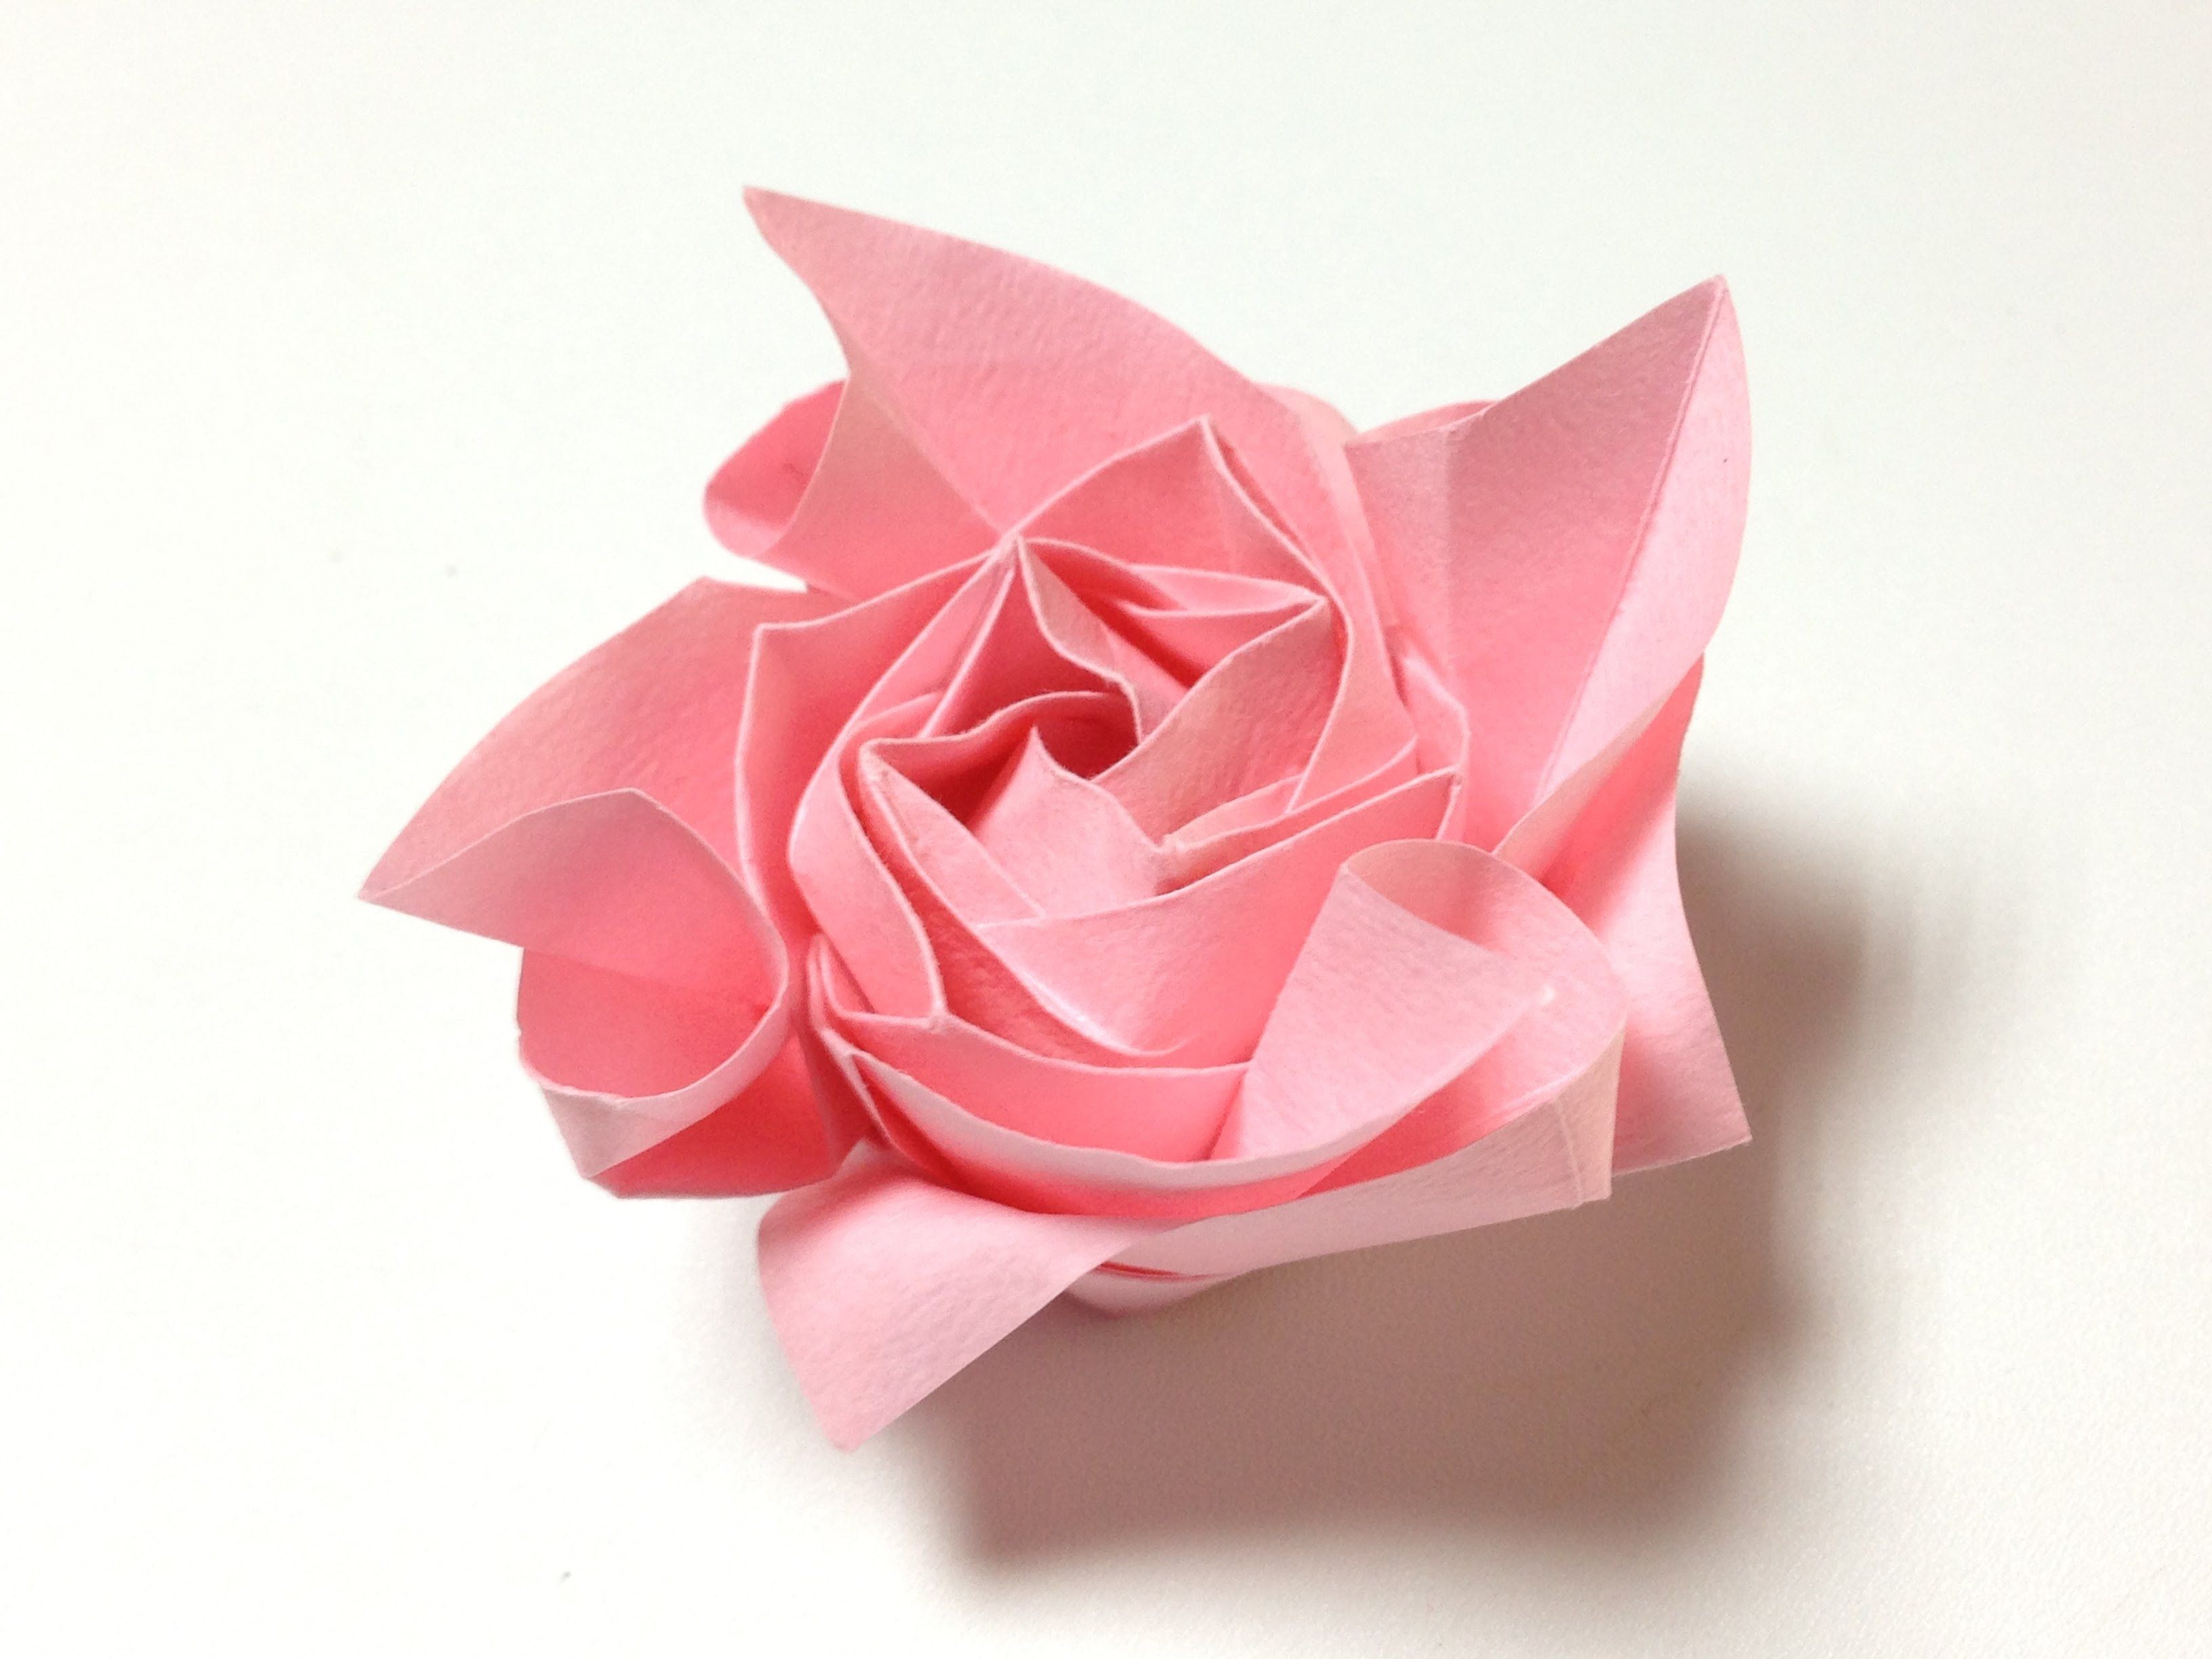 Papercraft Rose éäººæãã ãã©ã æãç´ 36 Ly One origami Rose 36